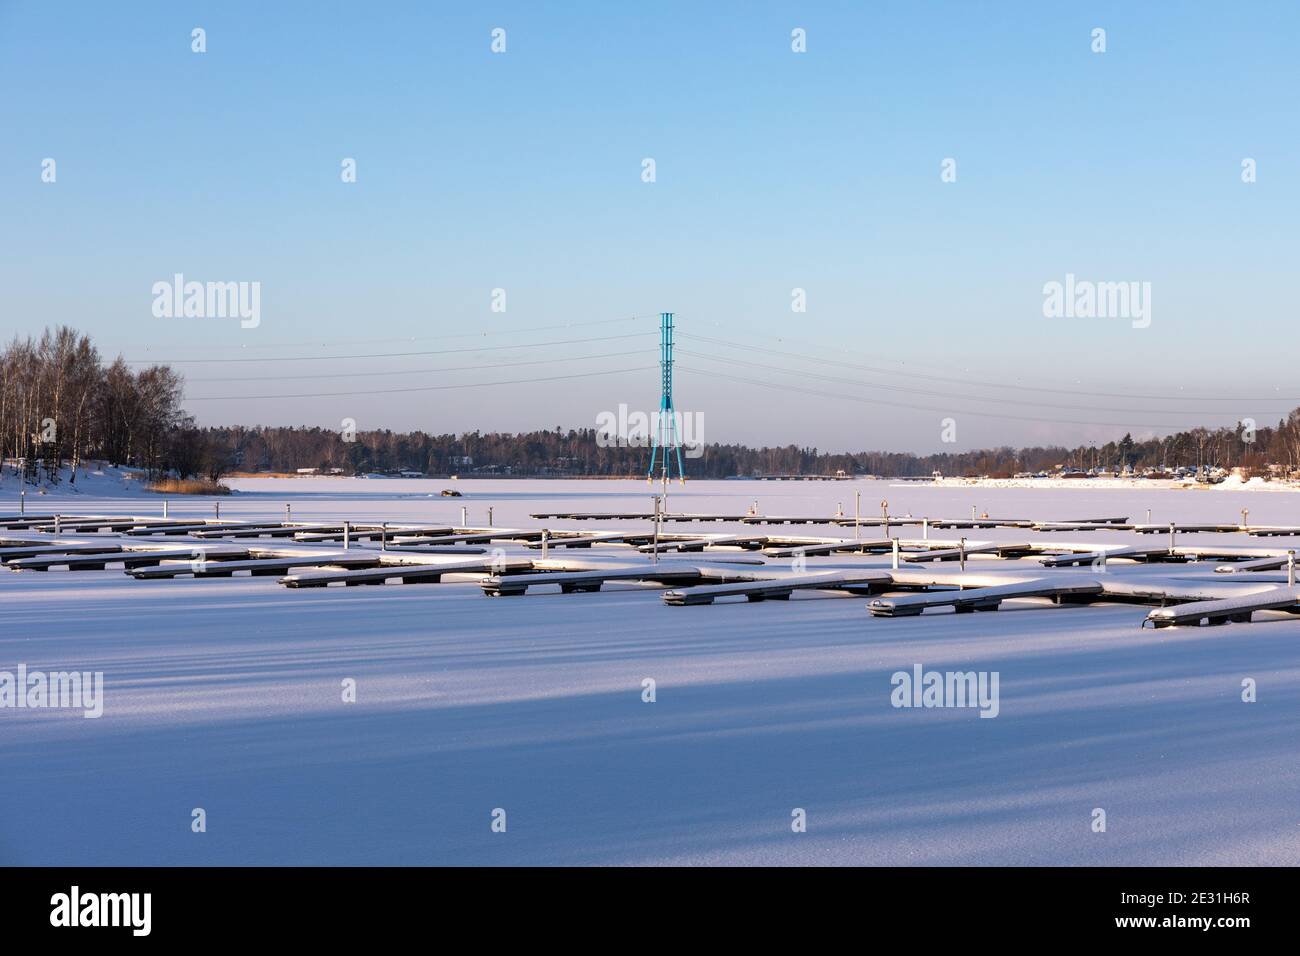 La baie de Taivallahti a été surgelée et enneigée par une froide journée d'hiver à Helsinki, en Finlande Banque D'Images